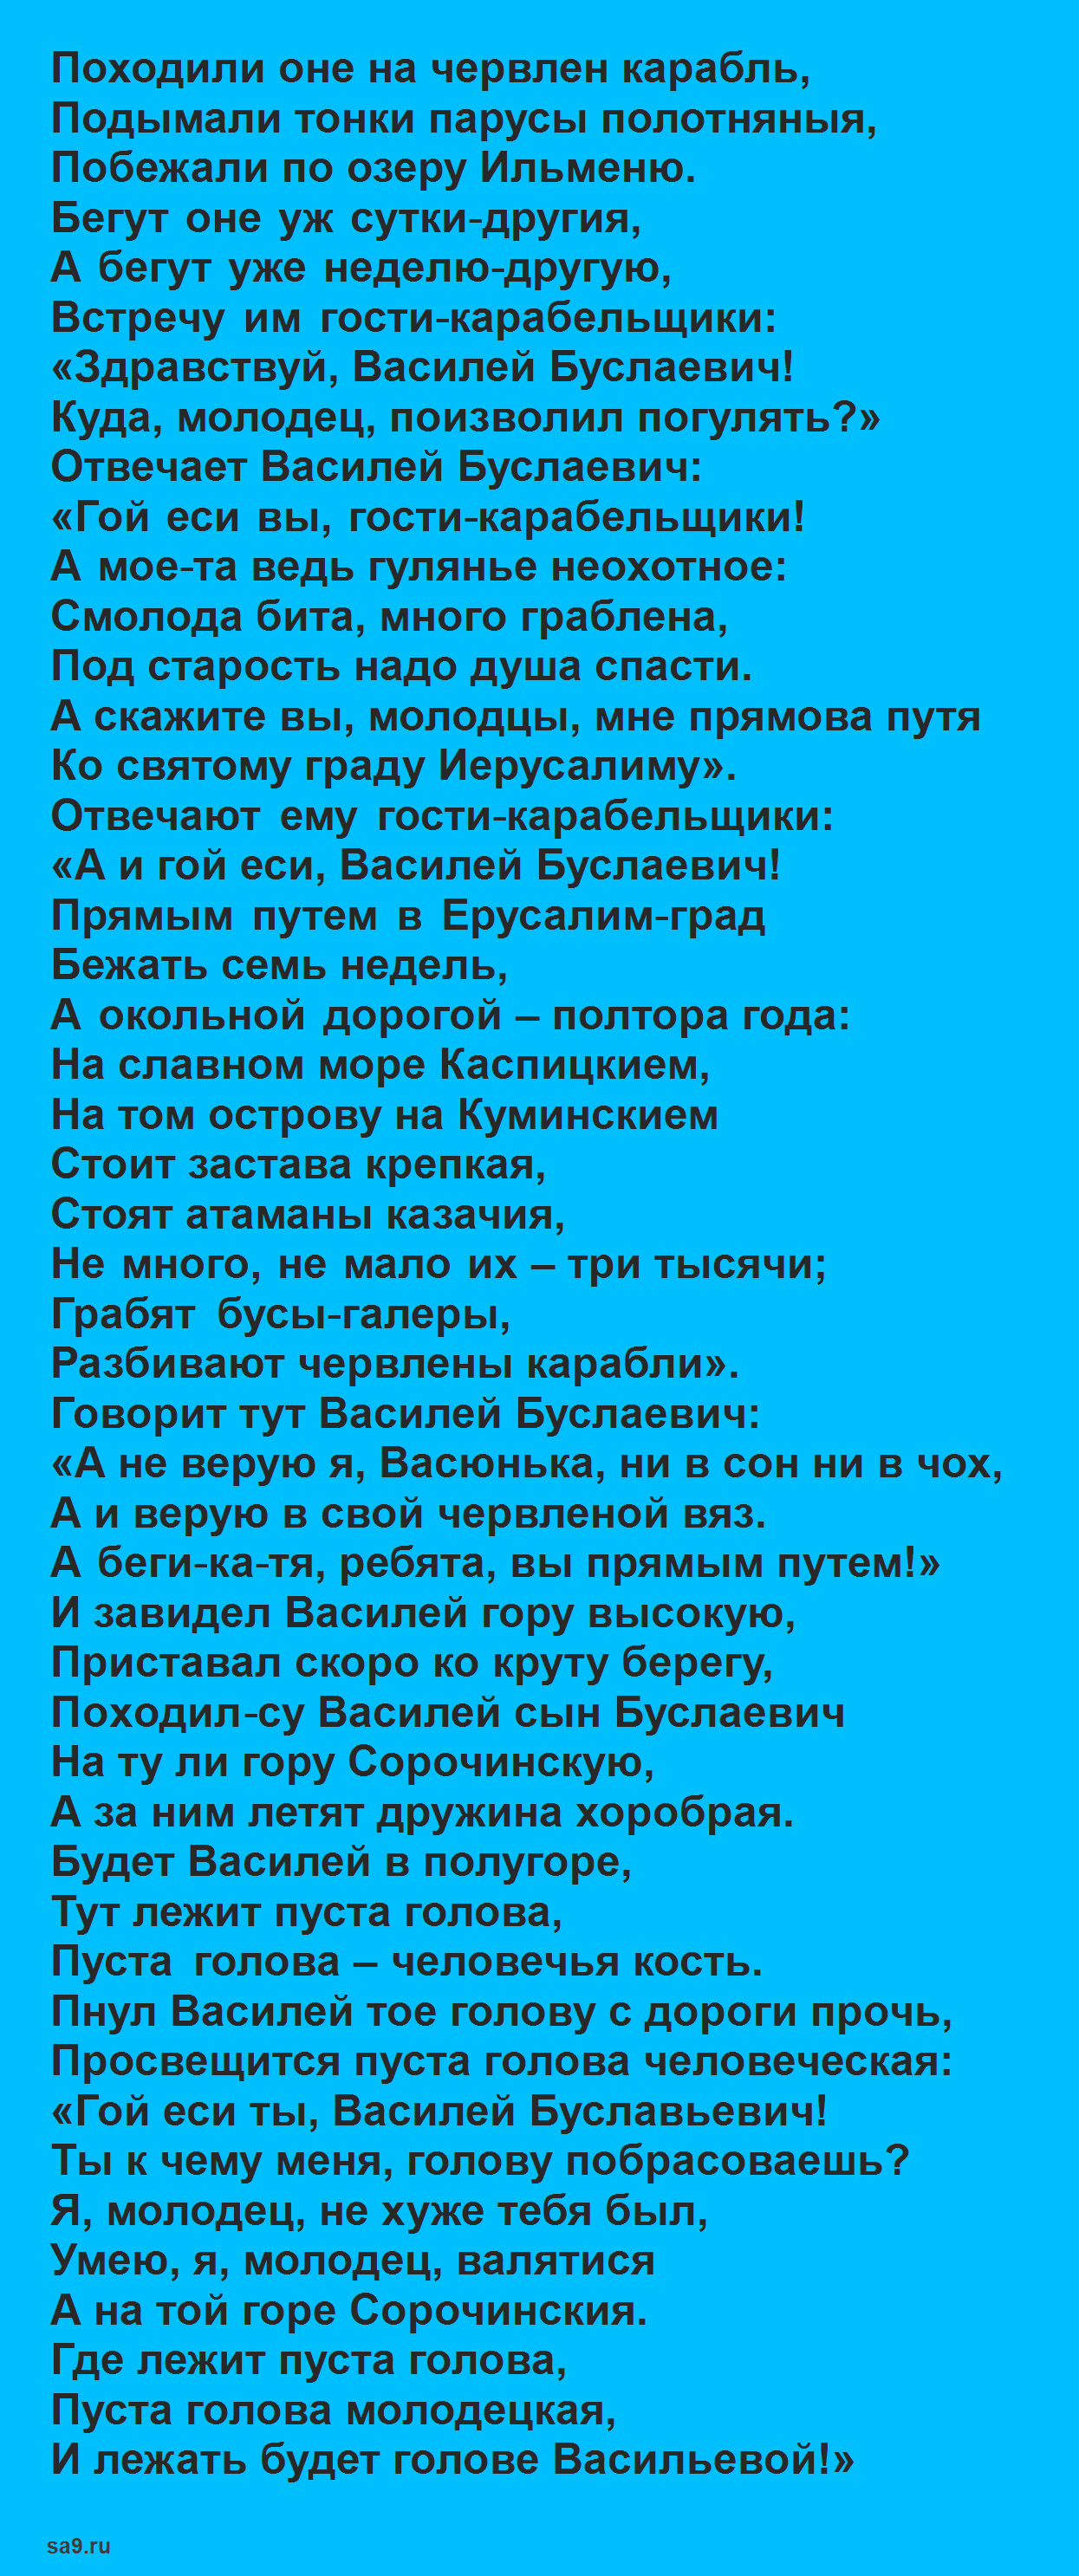 Читать былину - Смерть Василия Буслаева